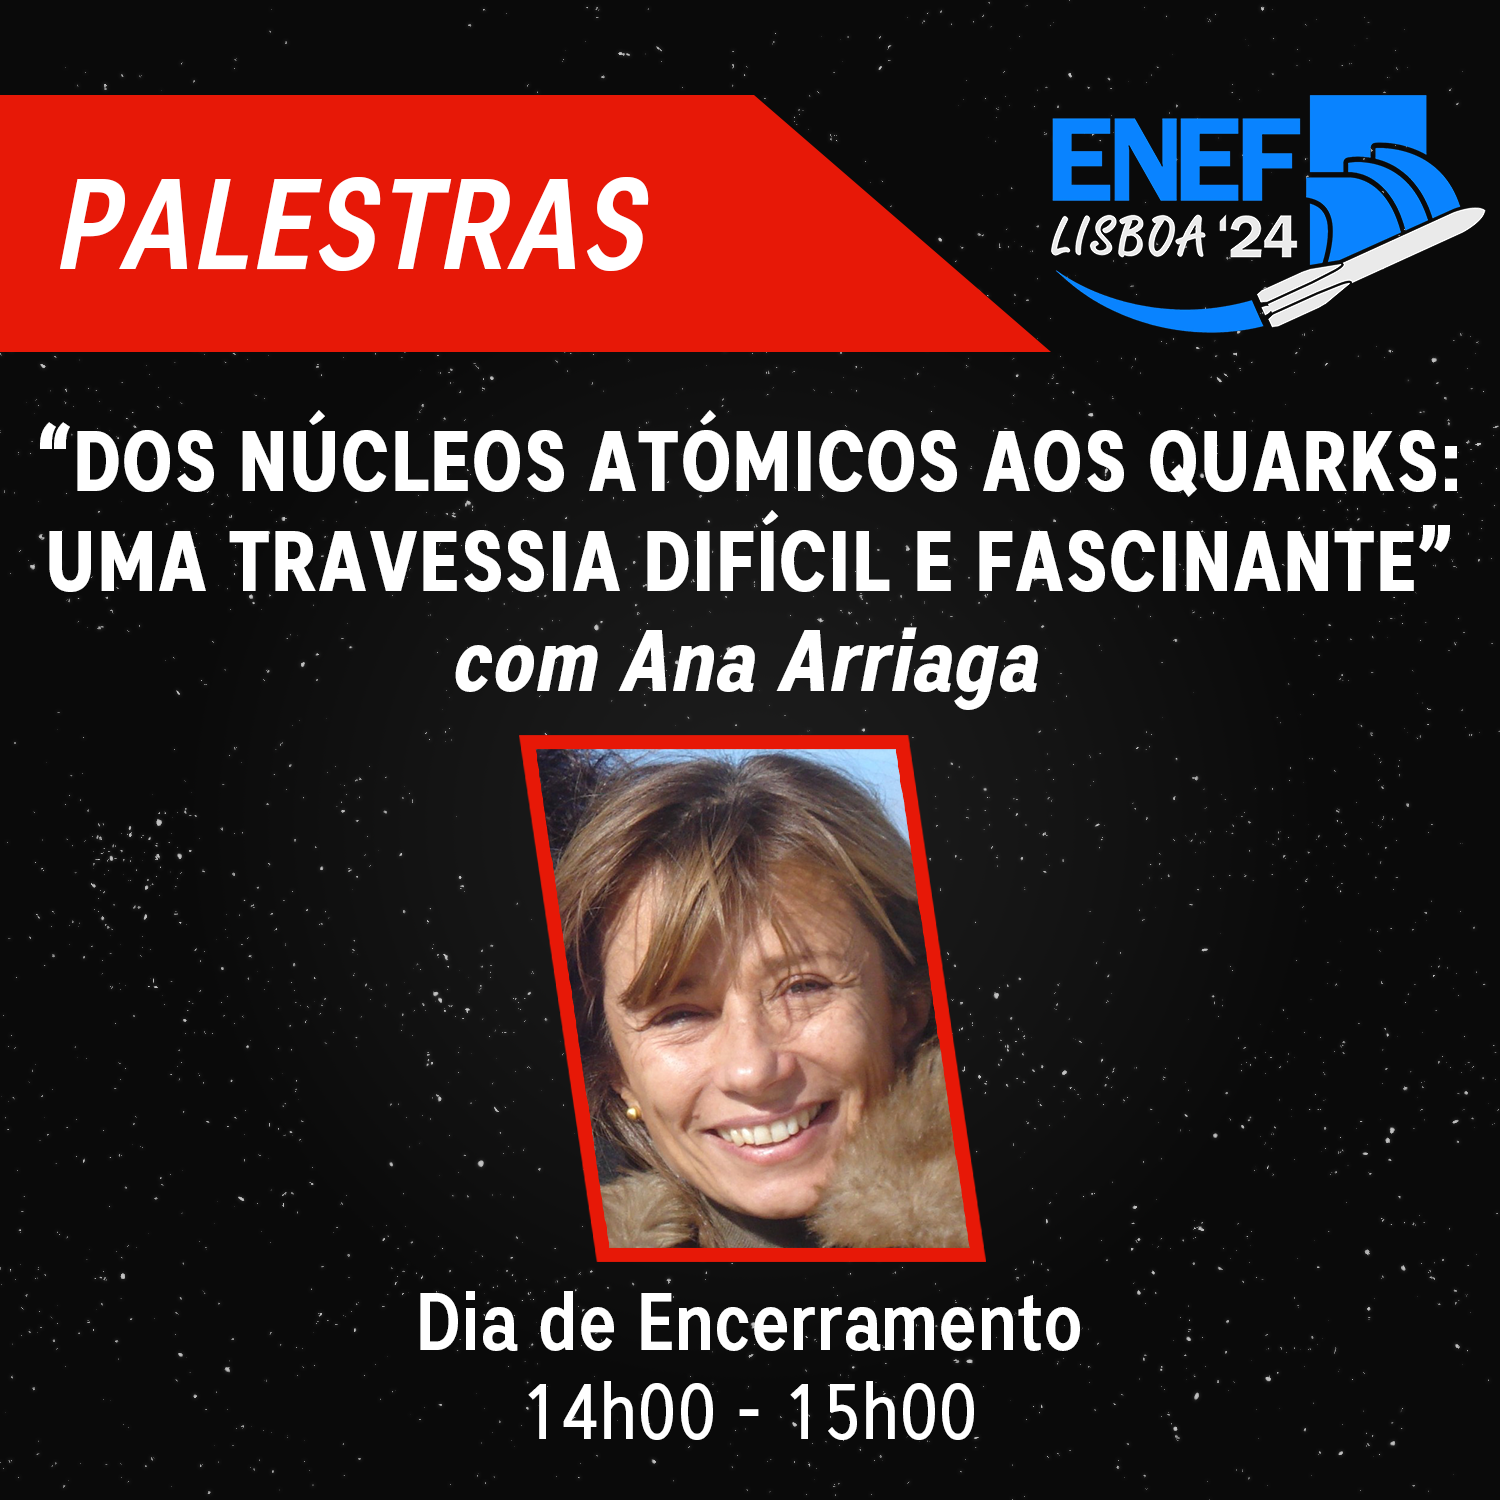 Ana Arriaga